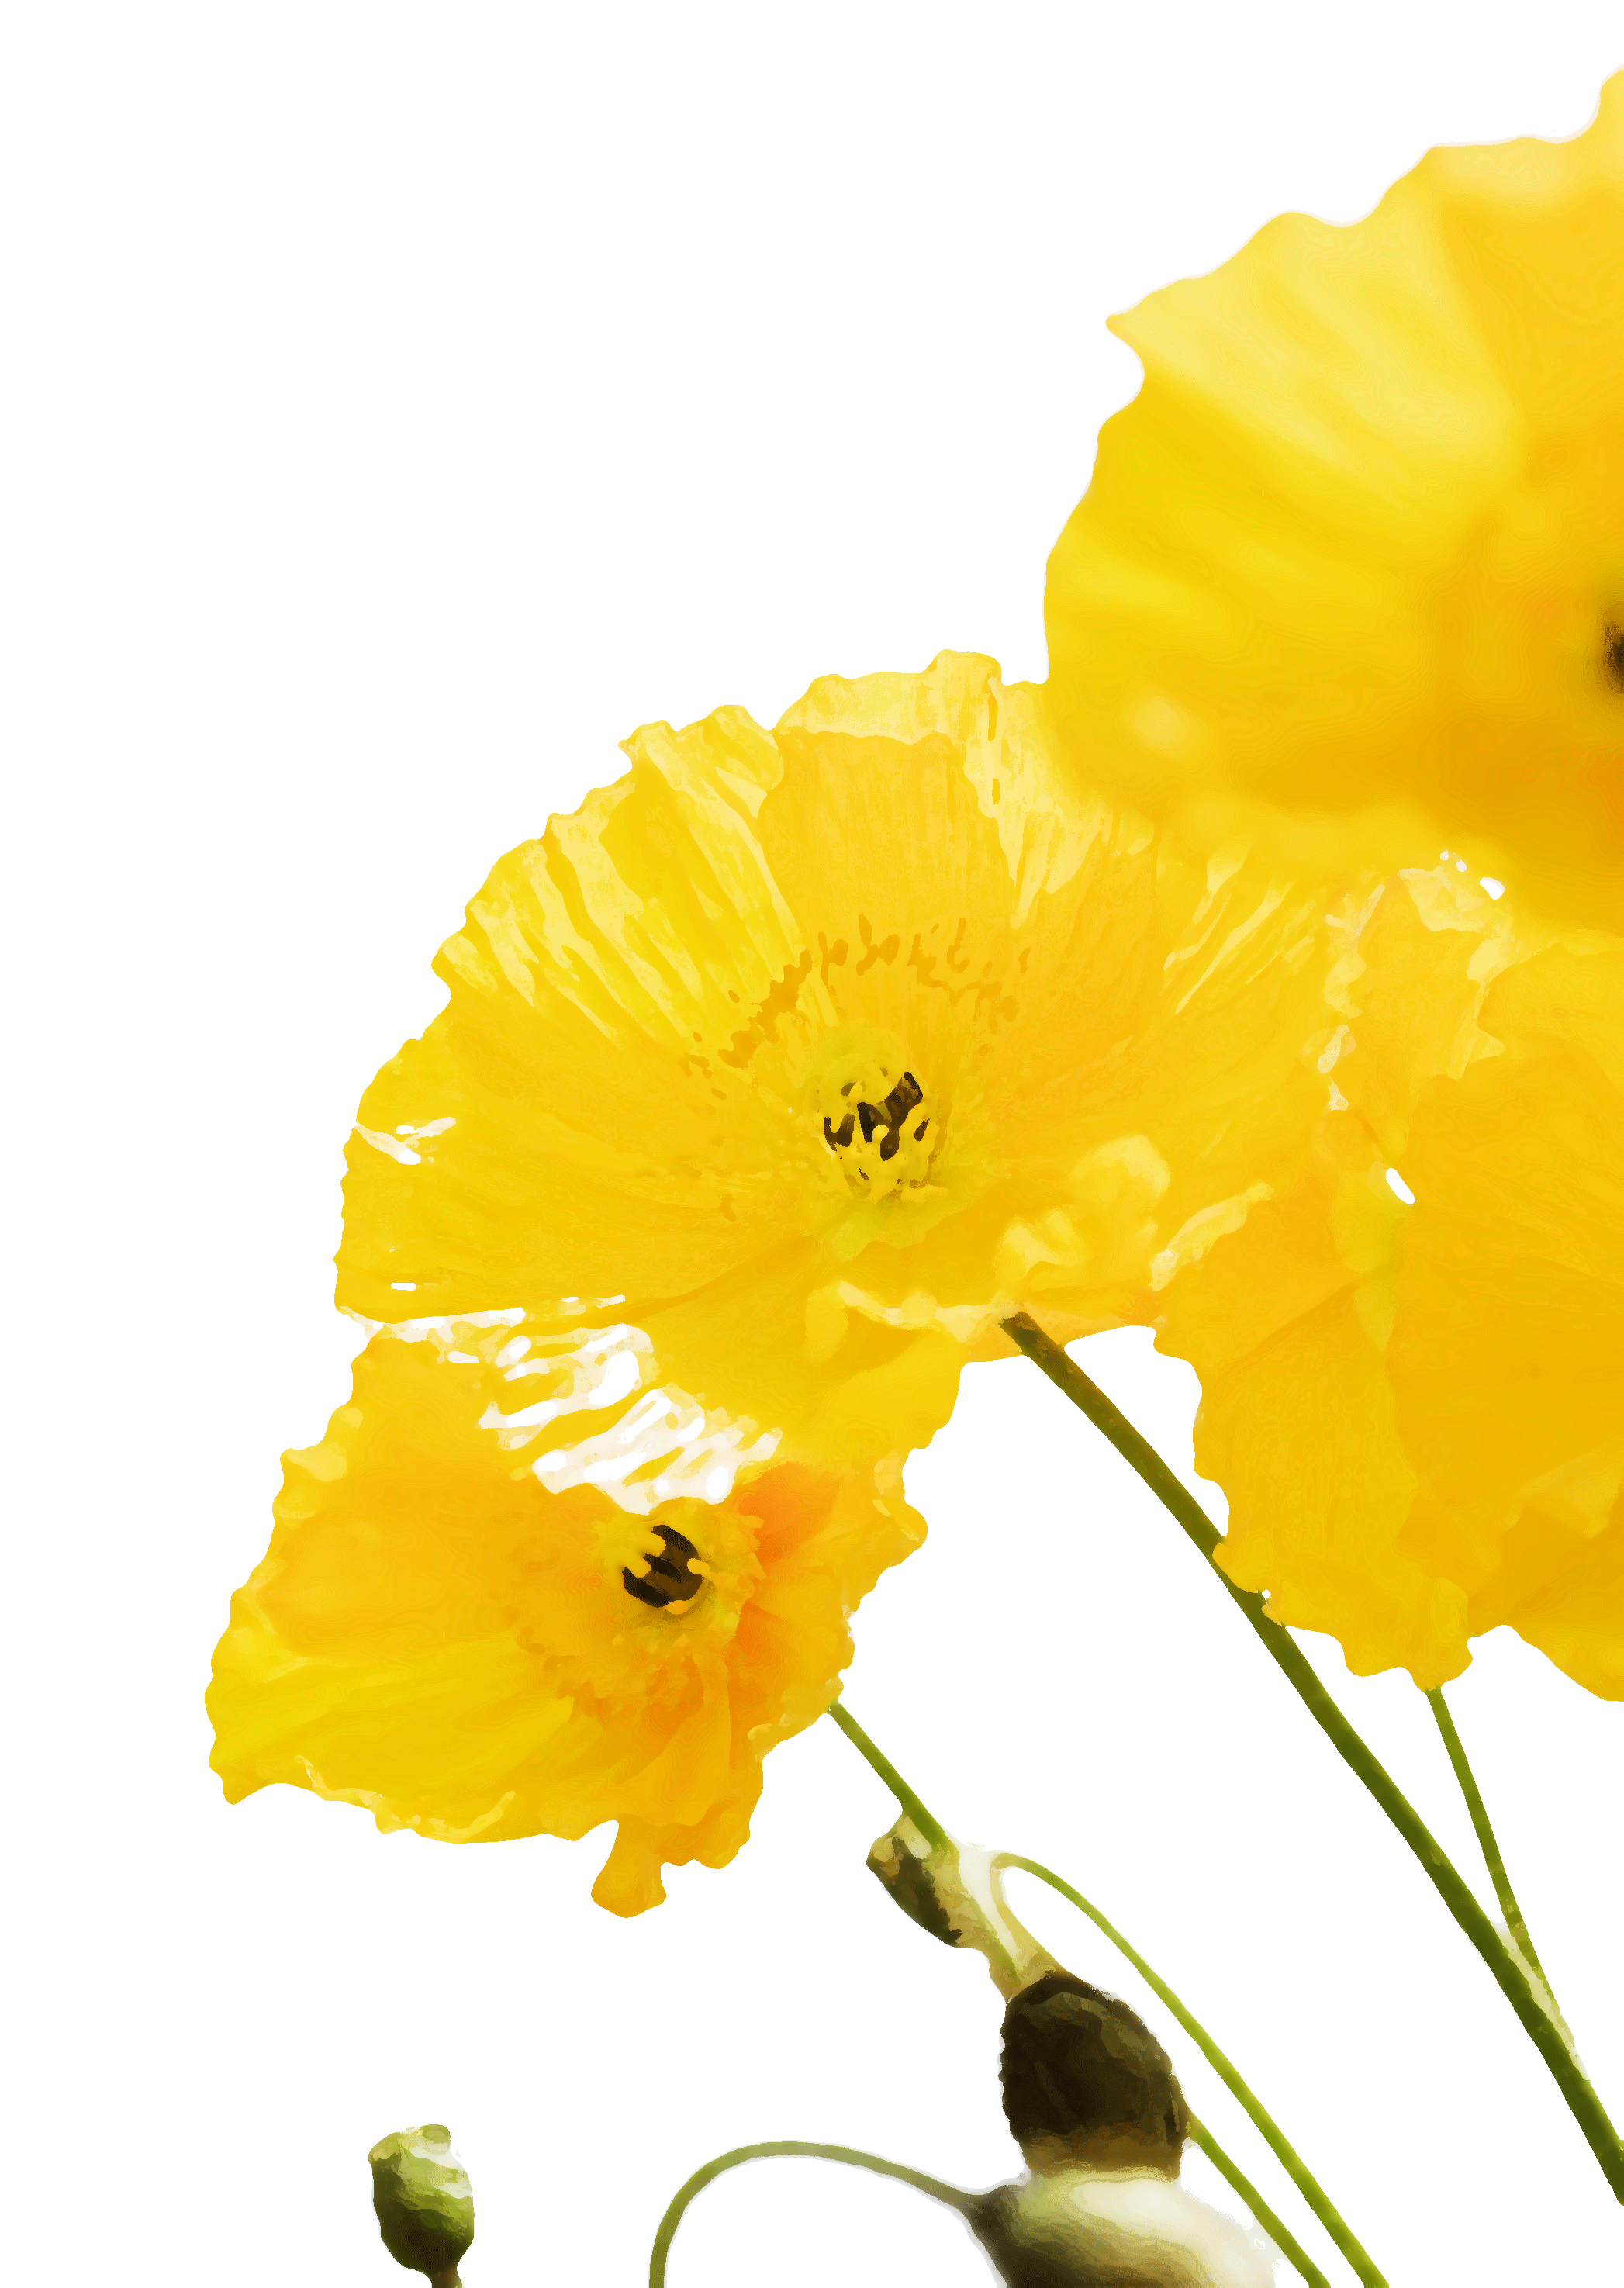 花のイラスト フリー素材 壁紙 背景no 477 黄色い花びら